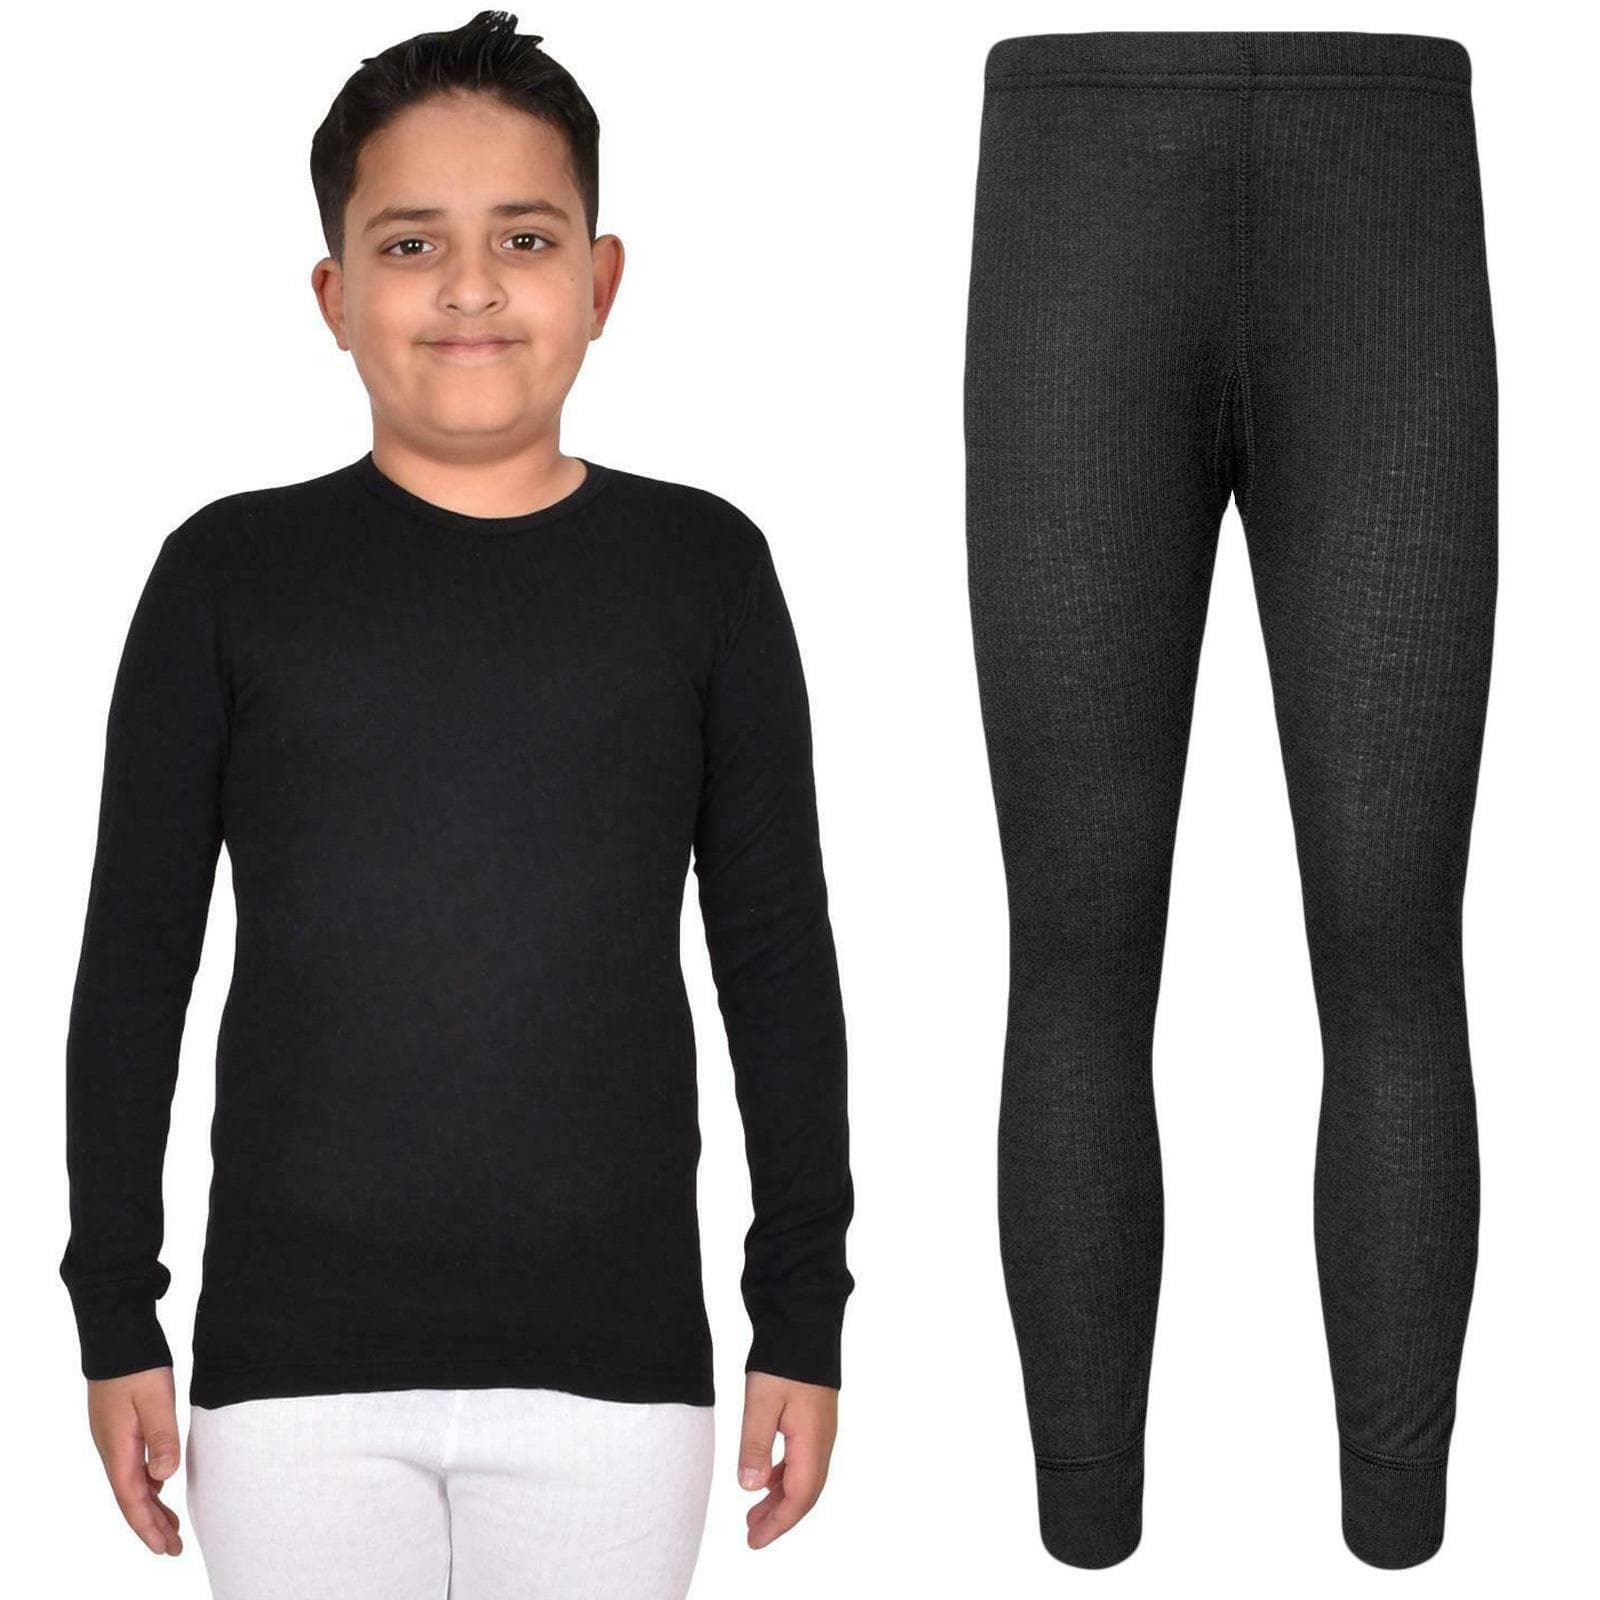 Kids Thermal Underwear Set Long Sleeve Black